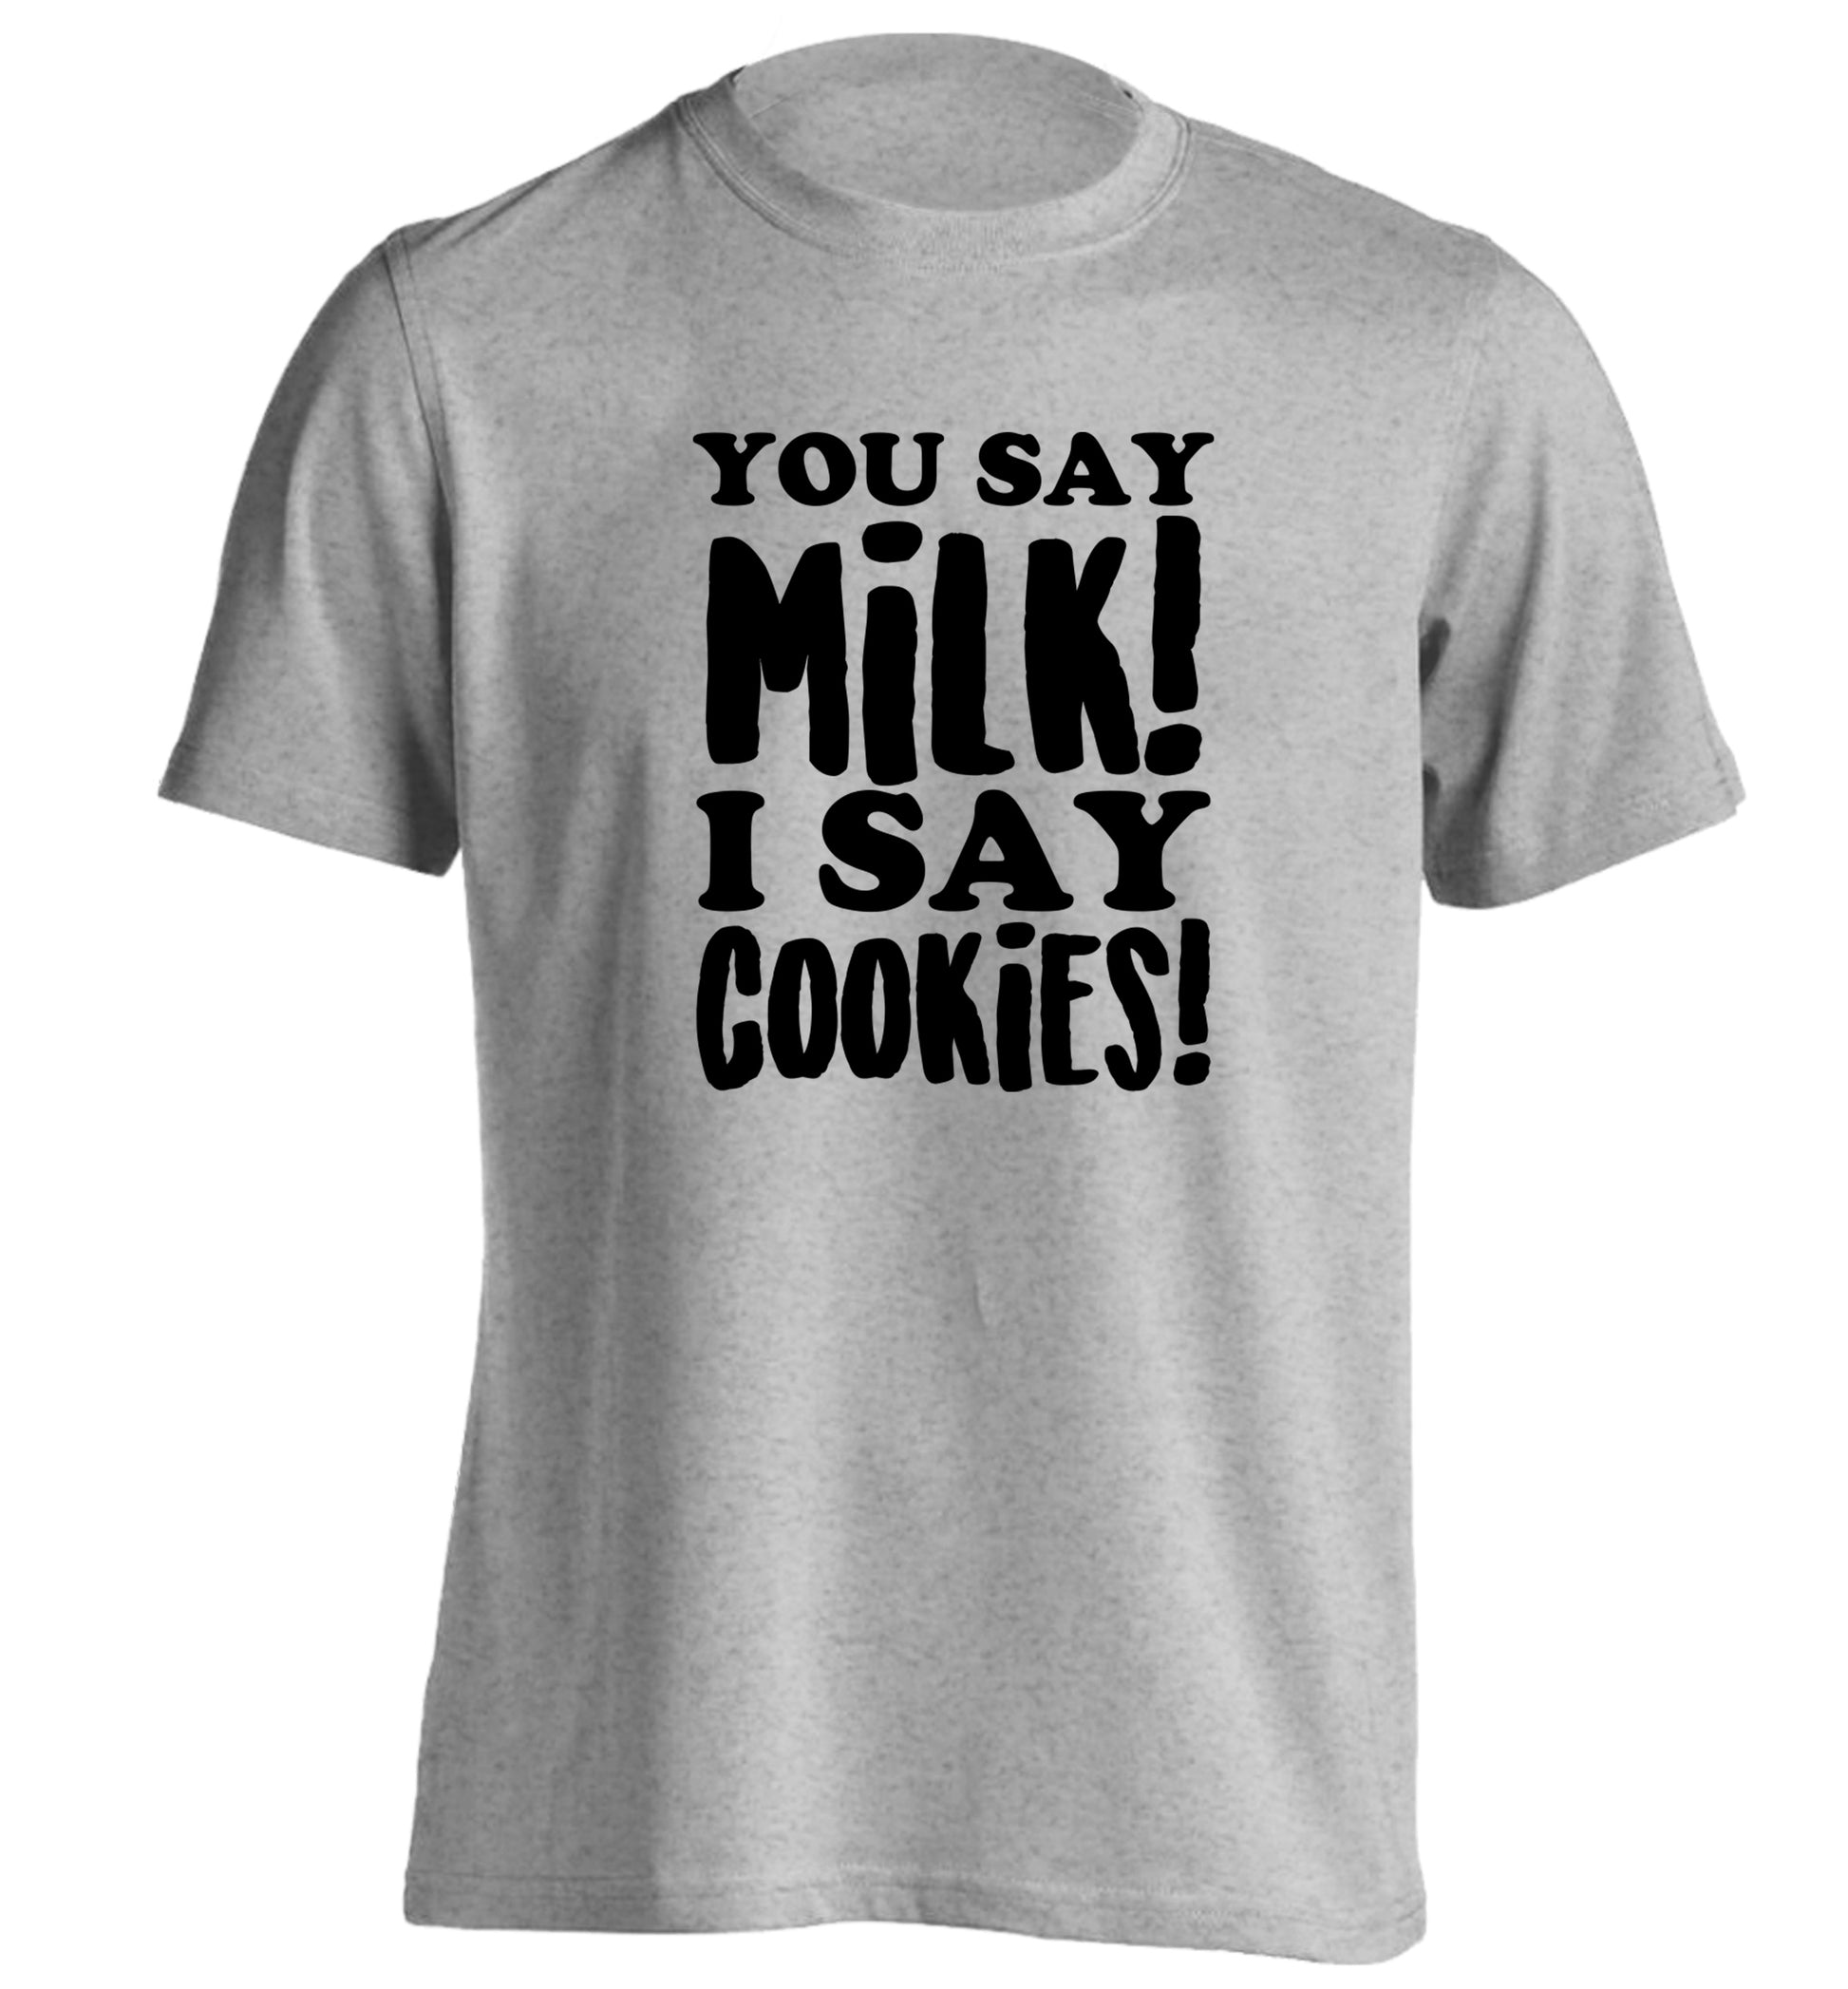 You say milk I say cookies! adults unisex grey Tshirt 2XL